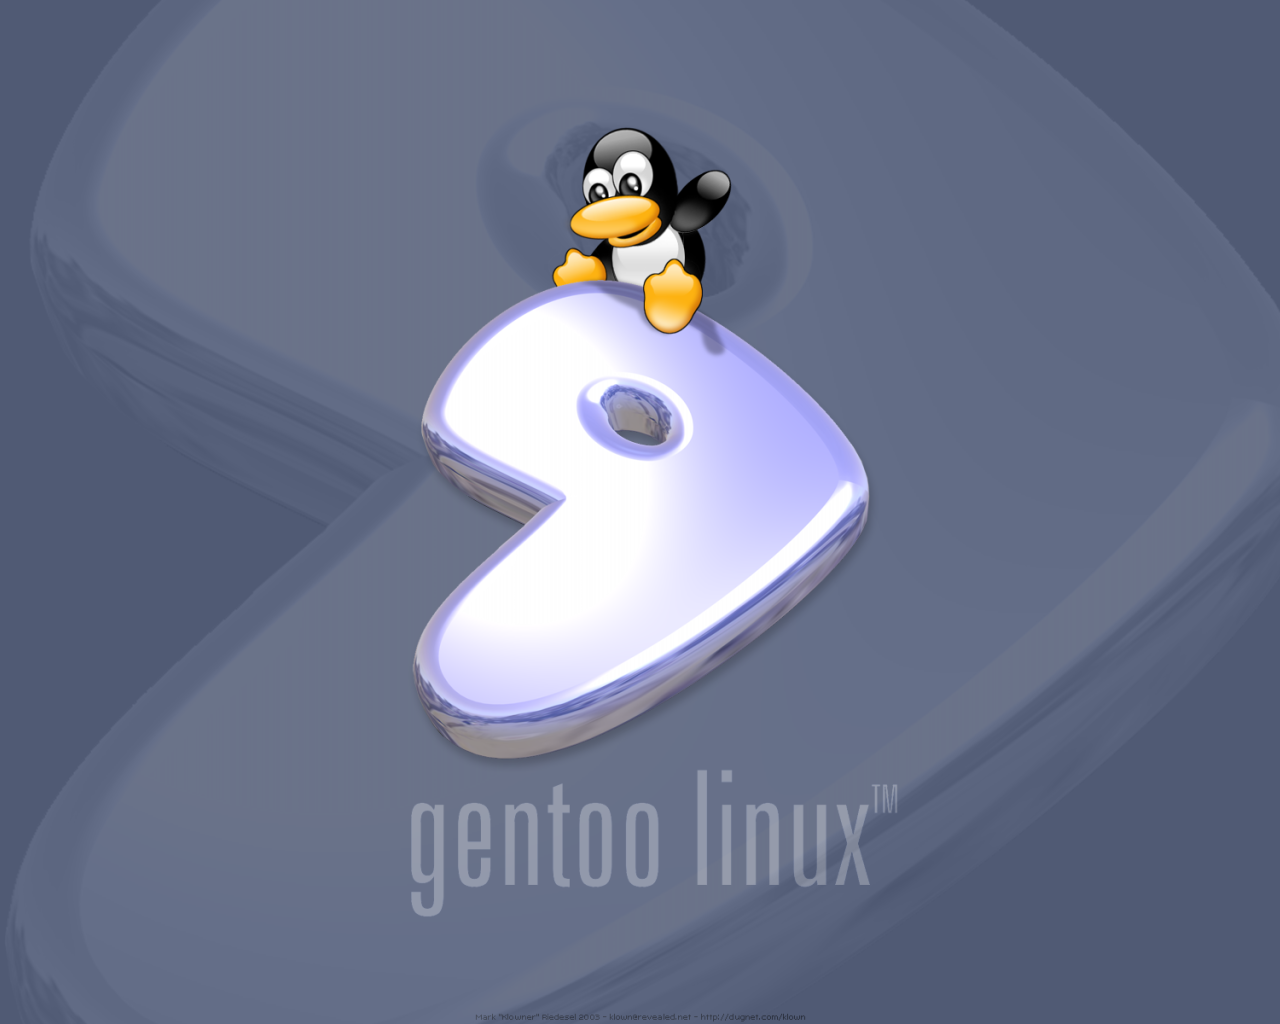 изображение Linux